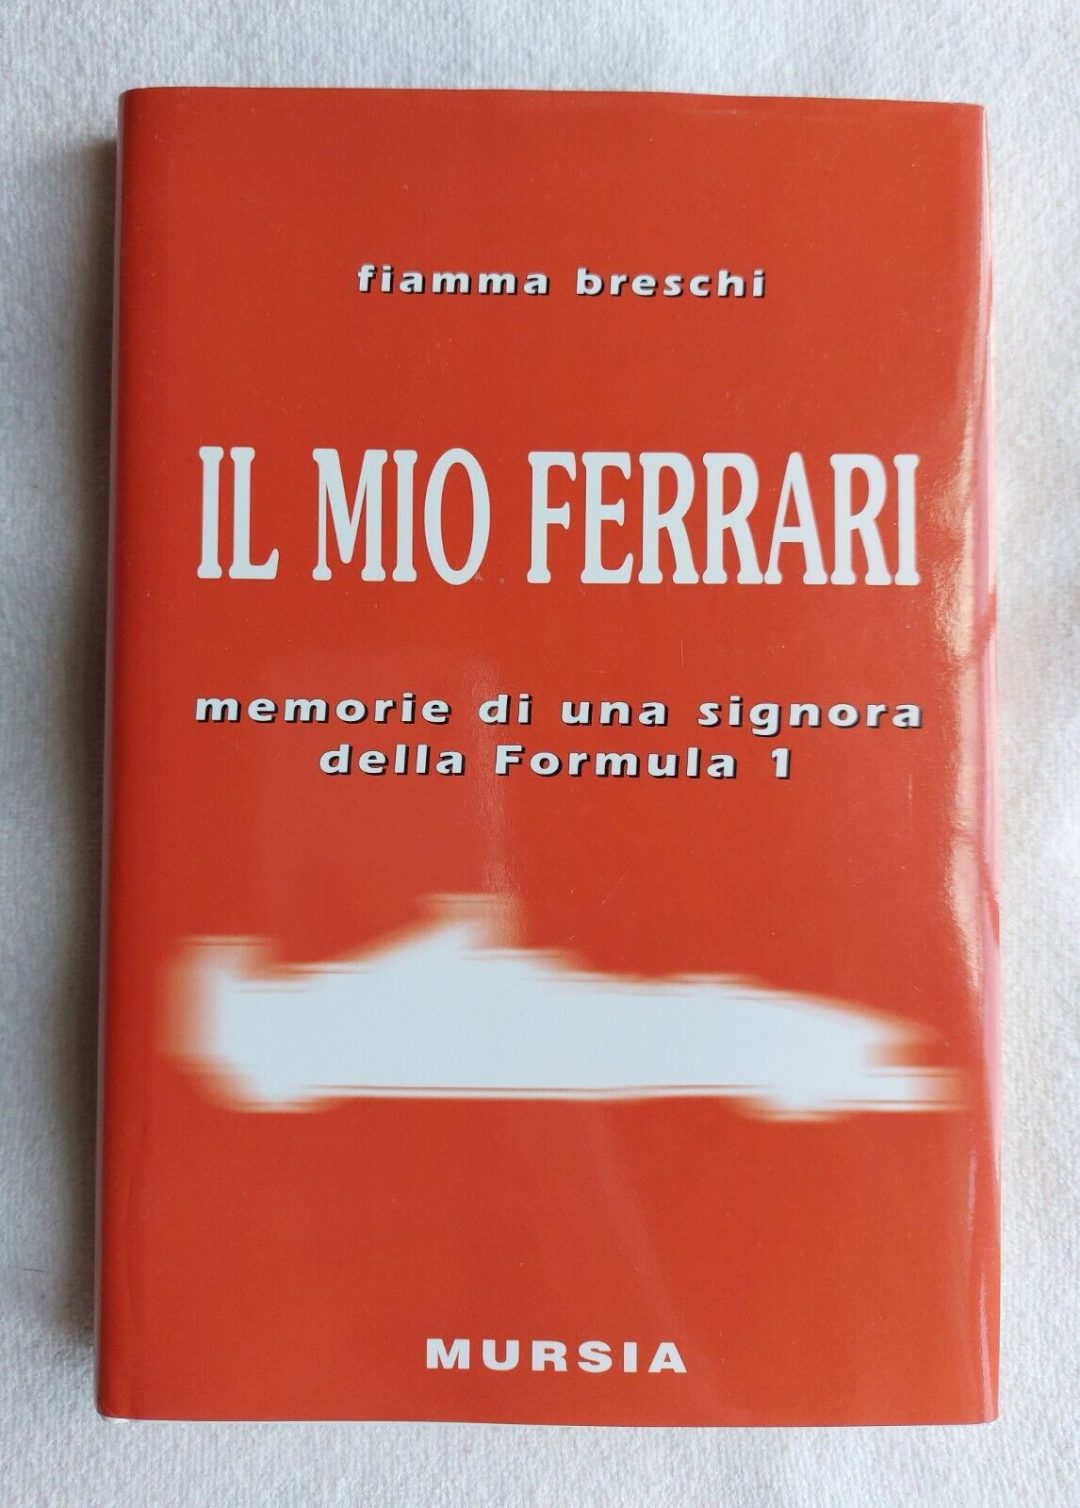 “Il mio Ferrari” di Fiamma Breschi: le memorie sul grande costruttore modenese sono ormai un libro cult